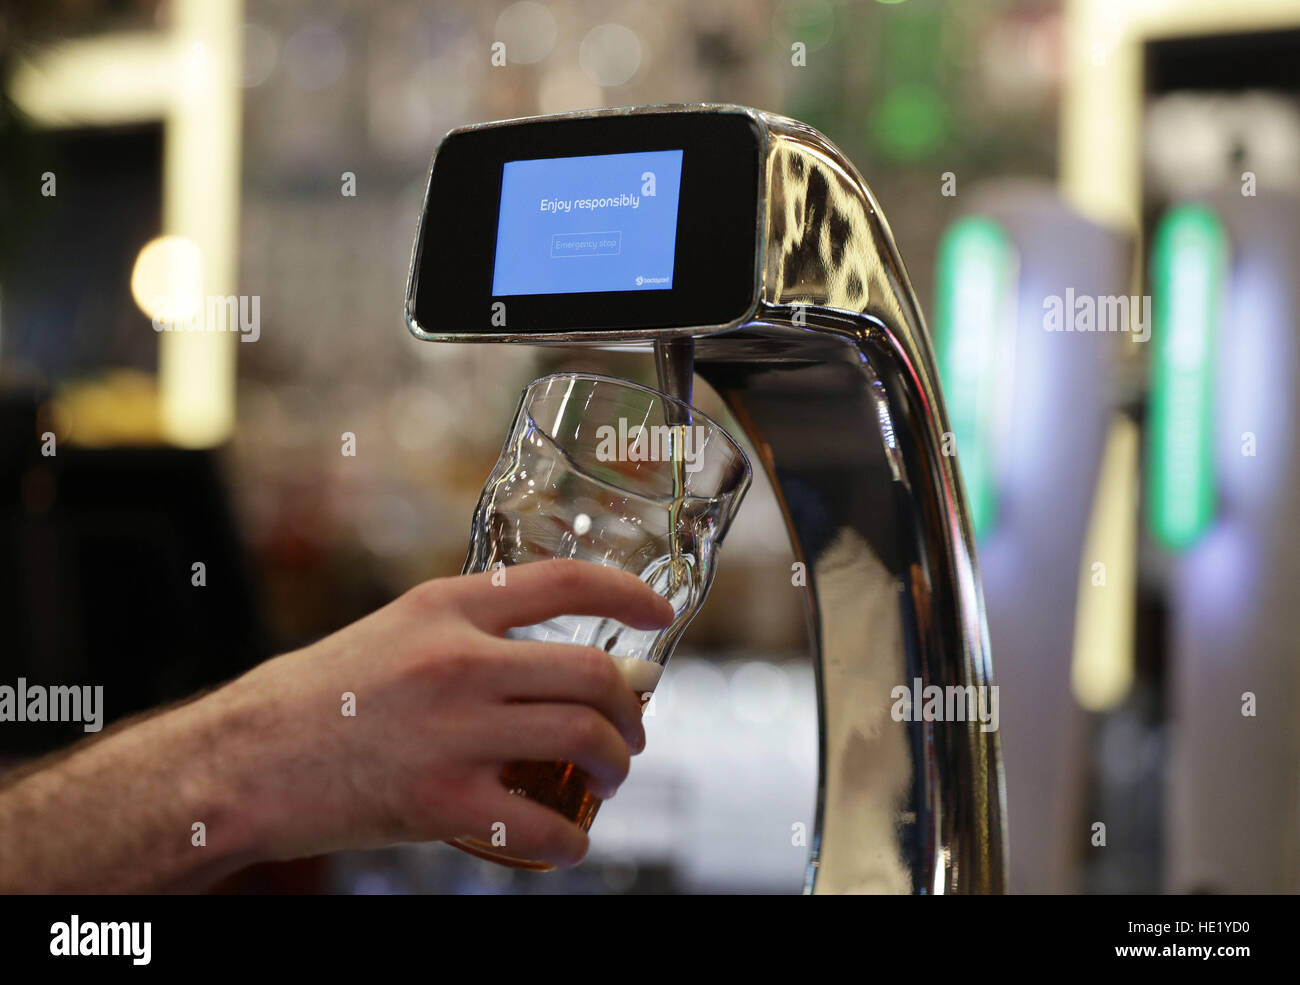 Si svolge una dimostrazione della prima pompa di birra indipendente e senza contatto sviluppata da Barclaycard per aiutare a tagliare le code di bar la sera, presso l'Henry's Cafe and Bar di Piccadilly, Londra. Foto Stock